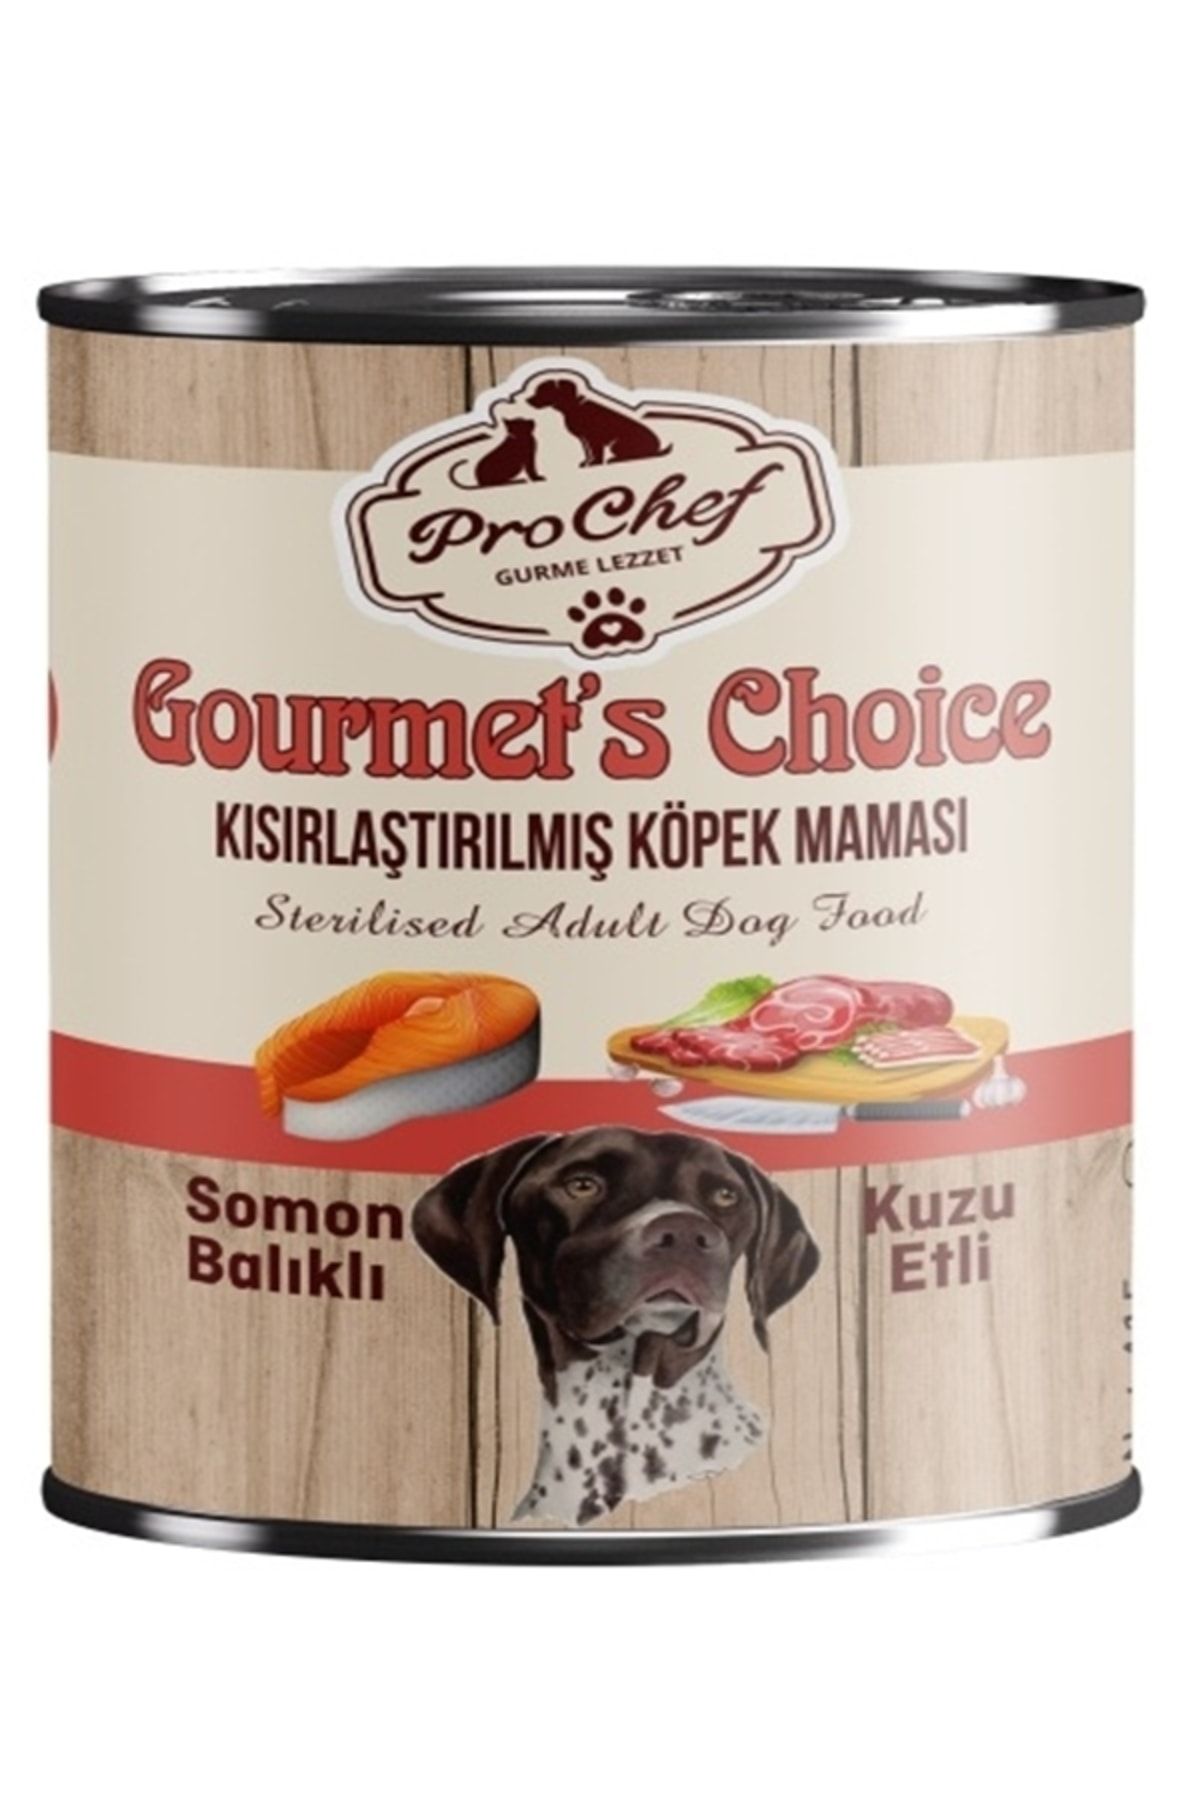 Prochef 24 Adet Gourmet's Choice Kısırlaştırılmış Köpek Maması | 415 Gr Somon & Kuzu Etli Konserve Yaş Mama